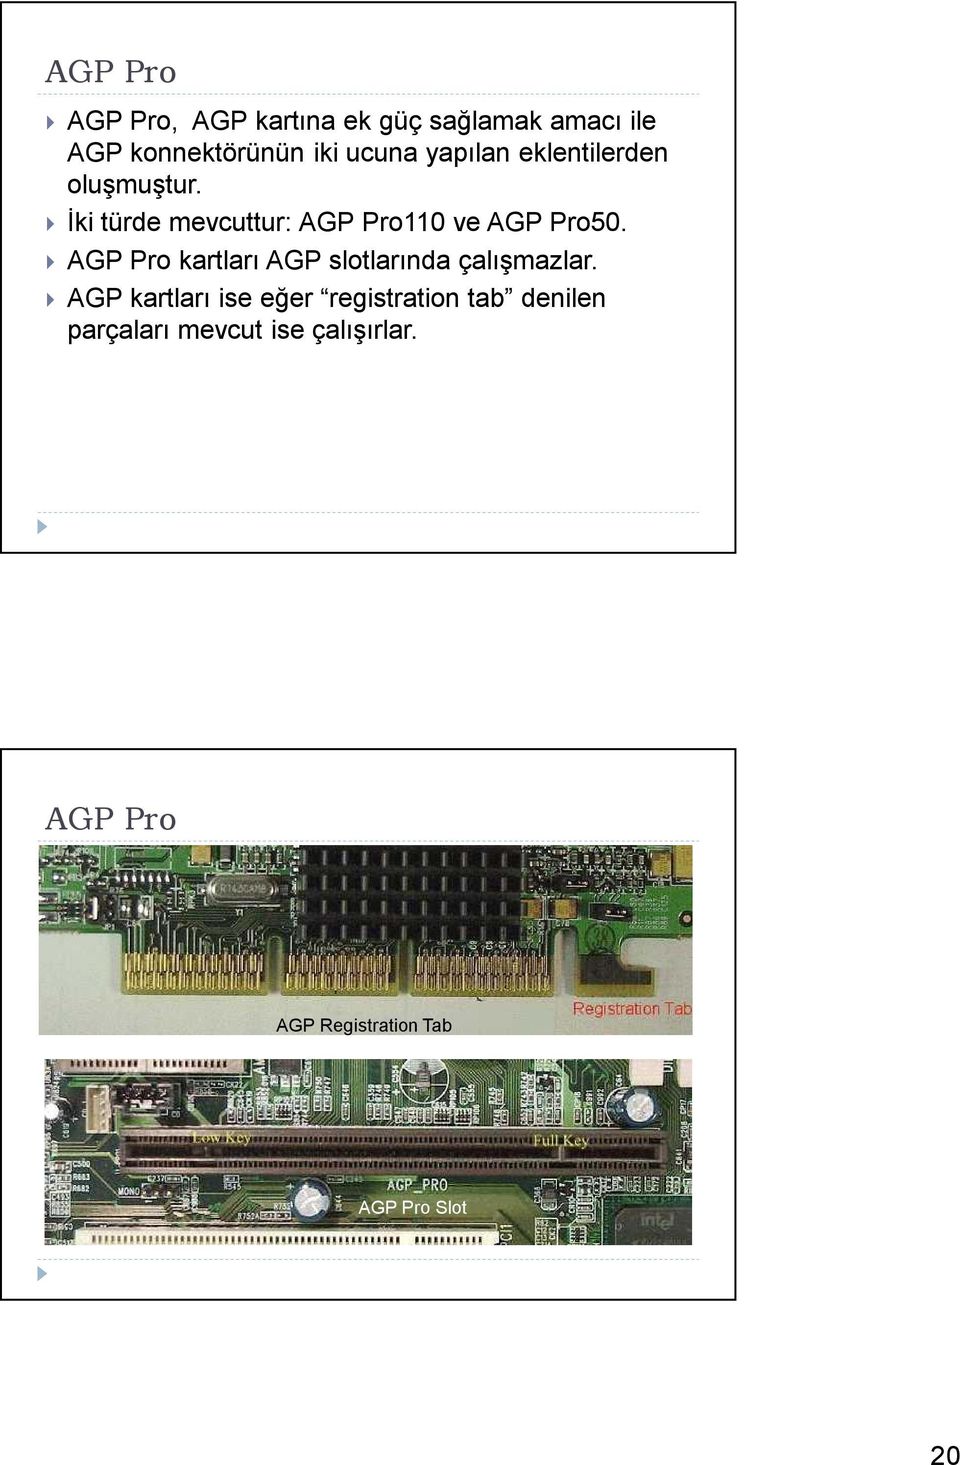 AGP Pro kartları AGP slotlarında çalışmazlar.